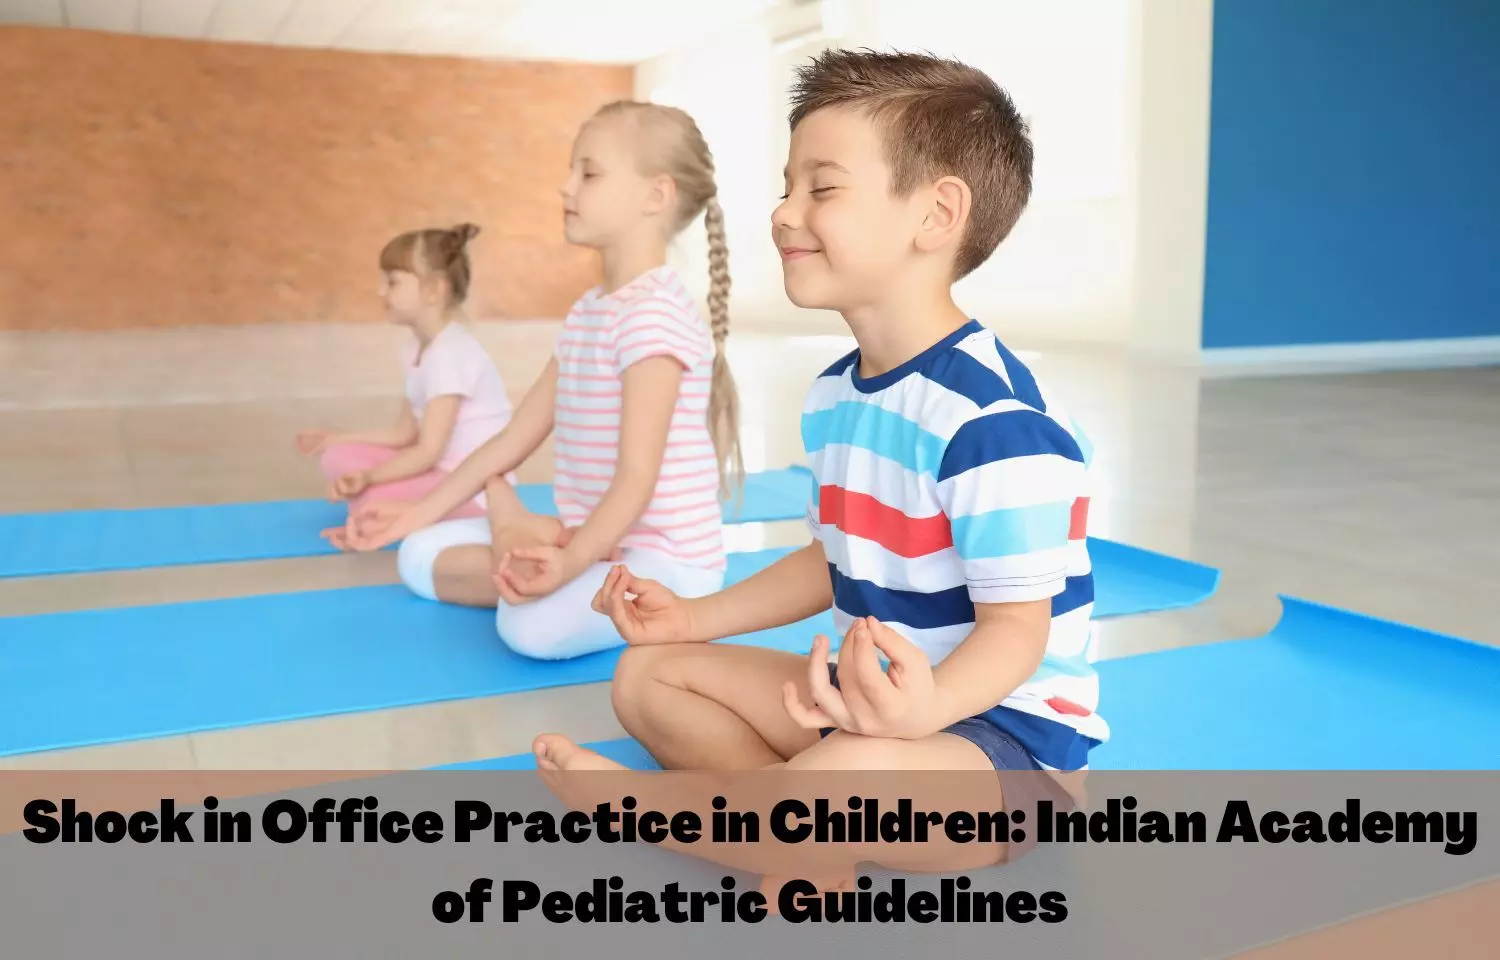 Shock in Office Practice in Children: IAP Guidelines